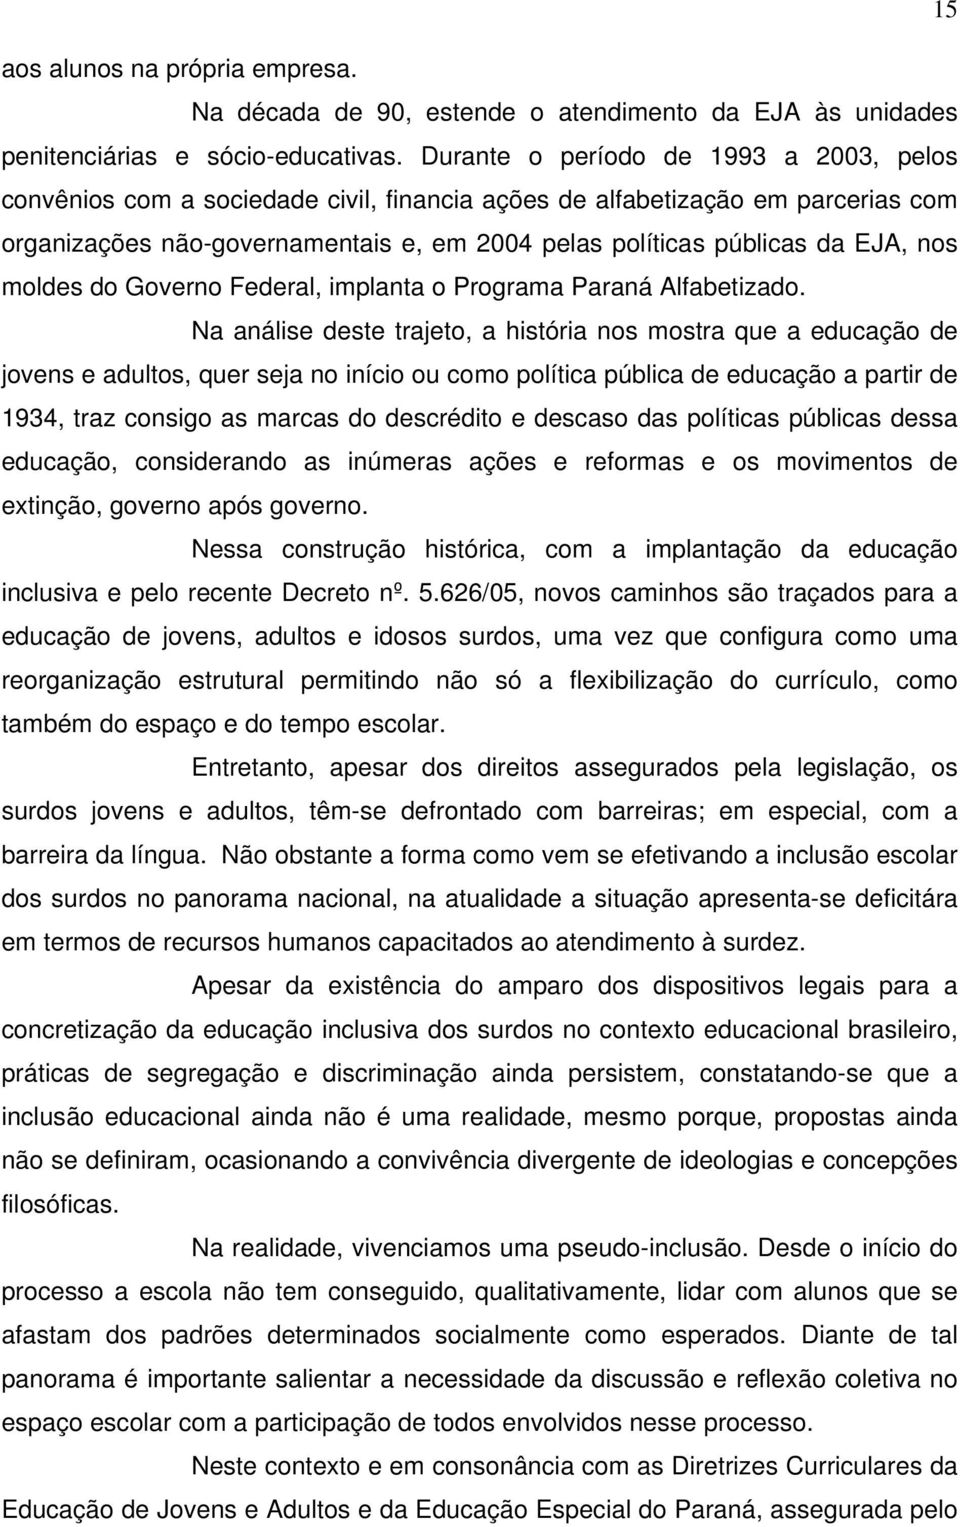 nos moldes do Governo Federal, implanta o Programa Paraná Alfabetizado.